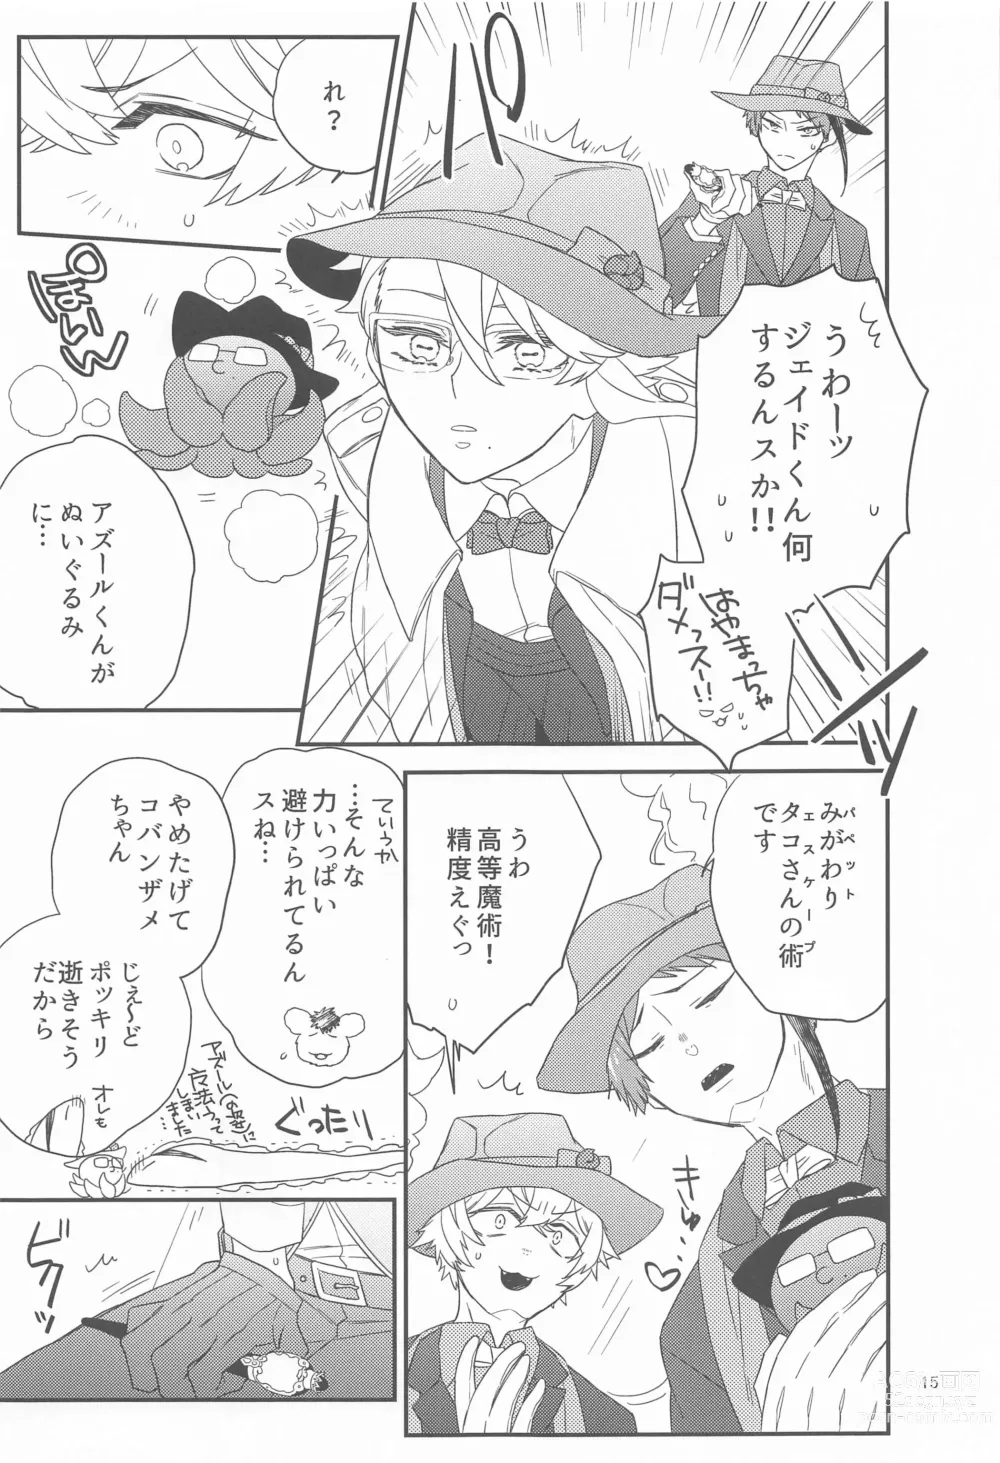 Page 14 of doujinshi Please Don’t Run Away!